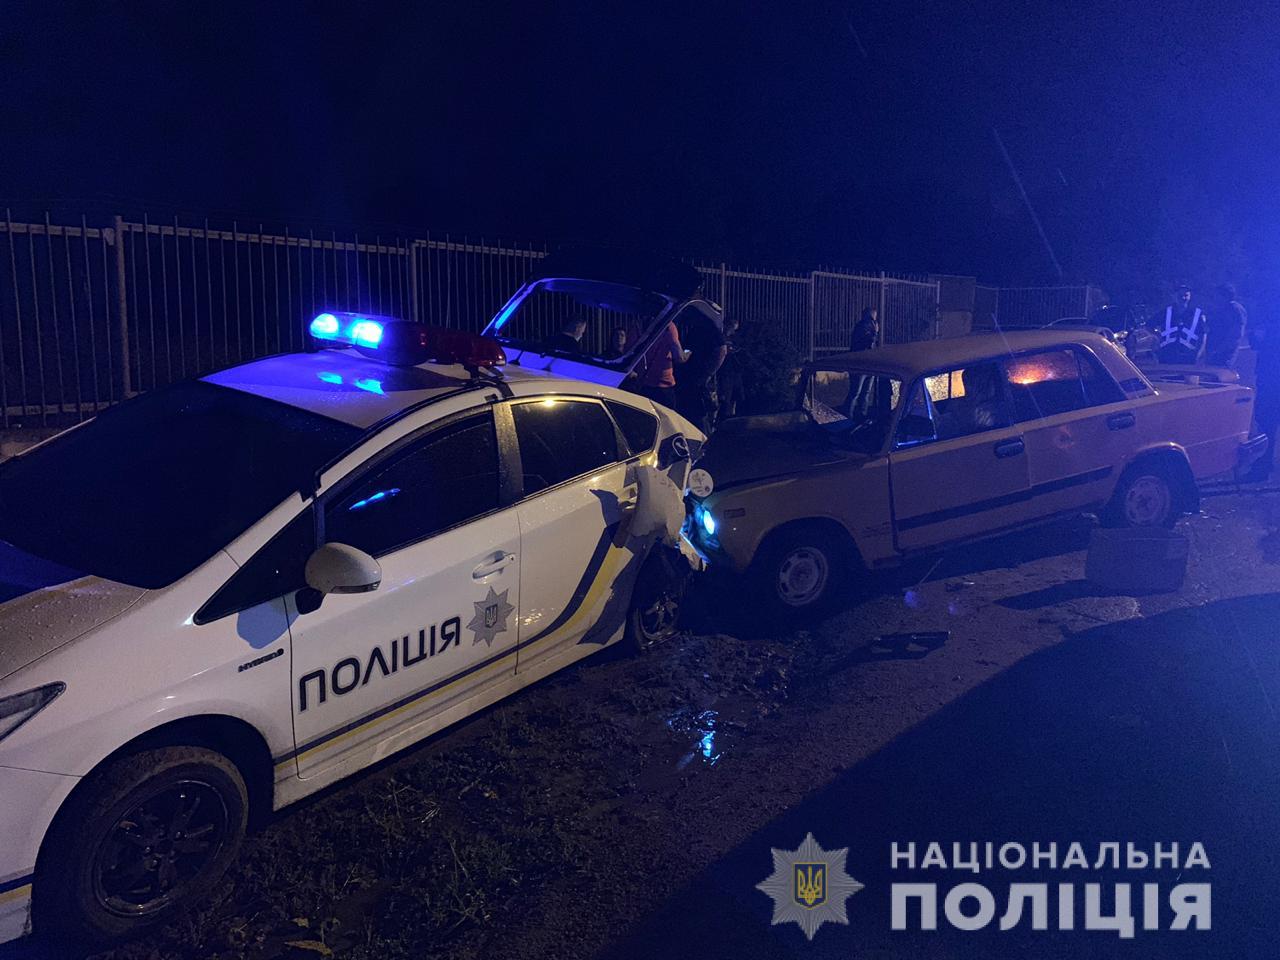 ДТП с полицейским автомобилем произошло в Одесской области, ранен патрульный. Фото: Нацполиция